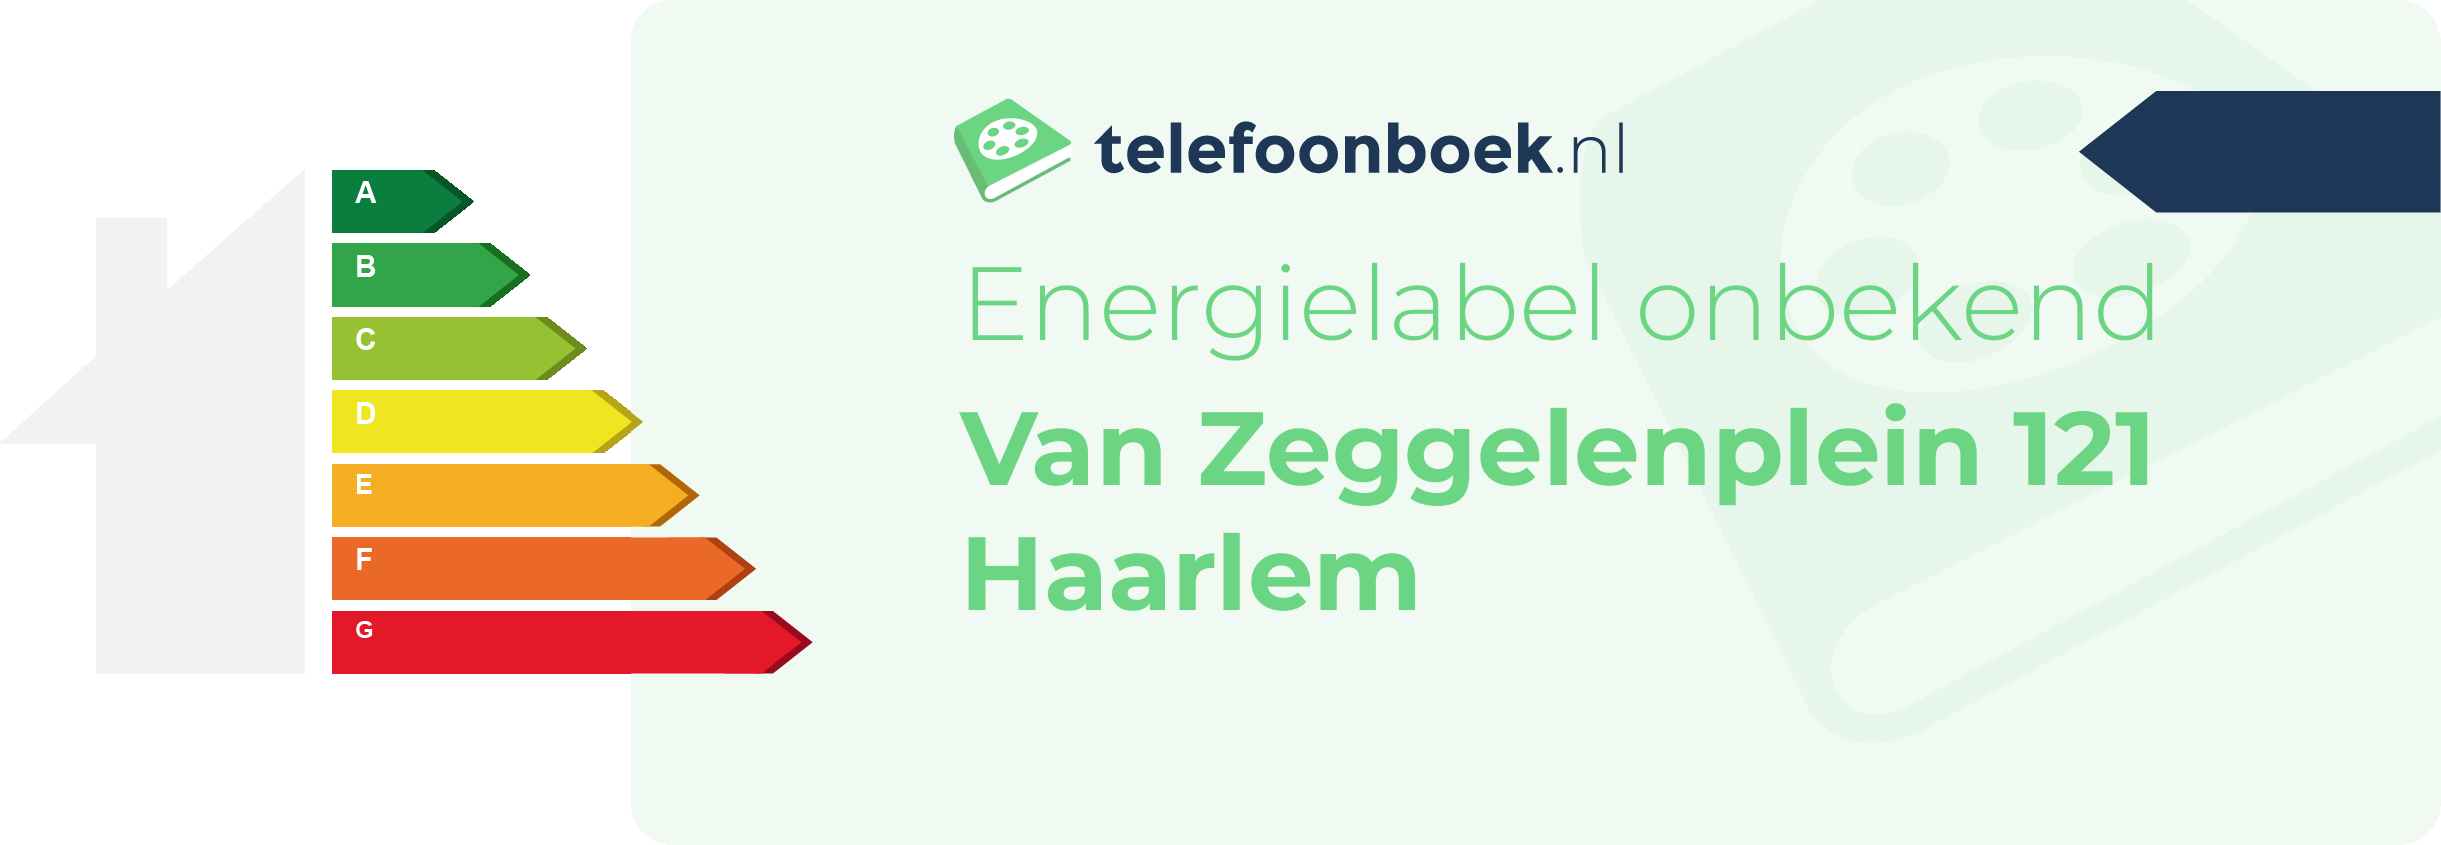 Energielabel Van Zeggelenplein 121 Haarlem